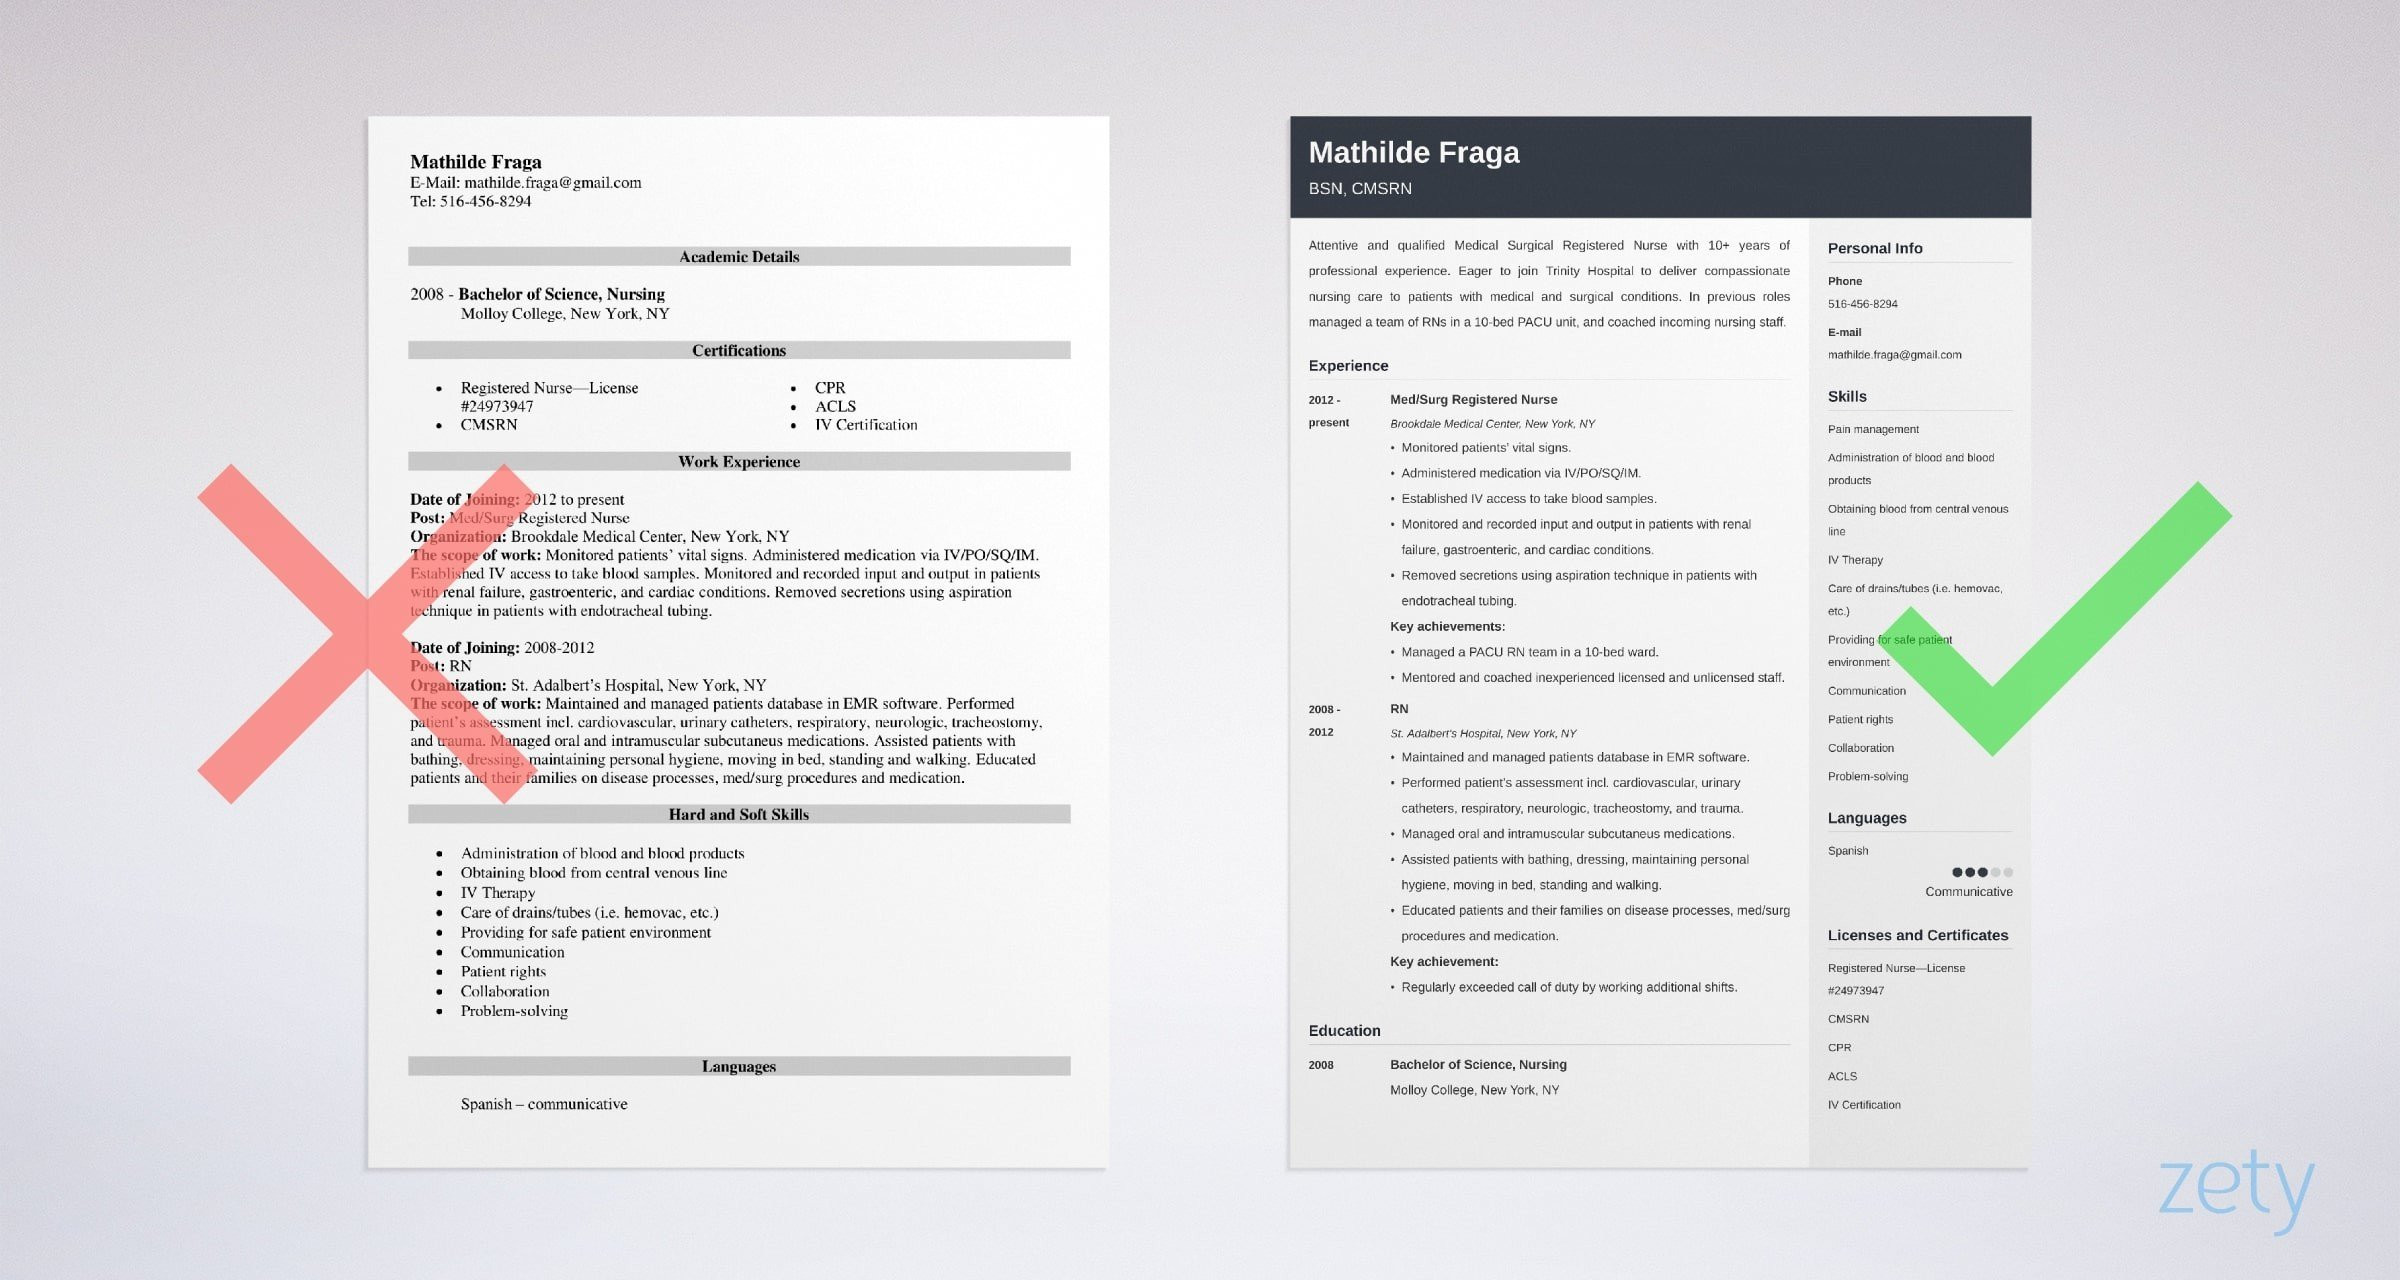 Pacu Nurse Career Profile Sample Resume Medical Surgical Nurse Resume Sample [job Description Tips]